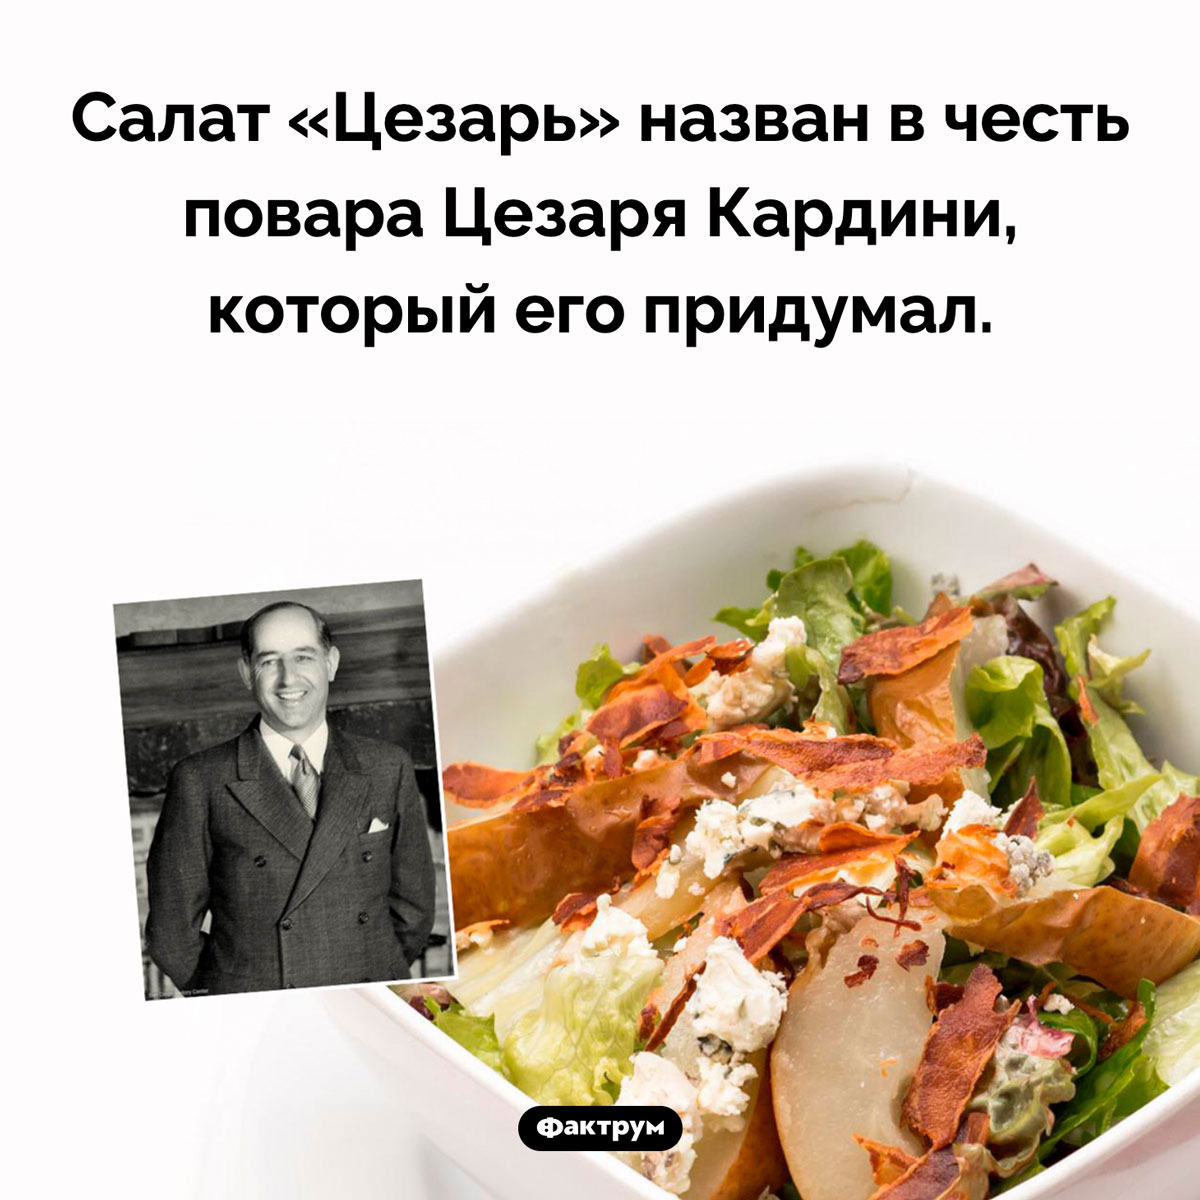 Почему салат «Цезарь» так называется. Салат «Цезарь» назван в честь повара Цезаря Кардини, который его придумал.